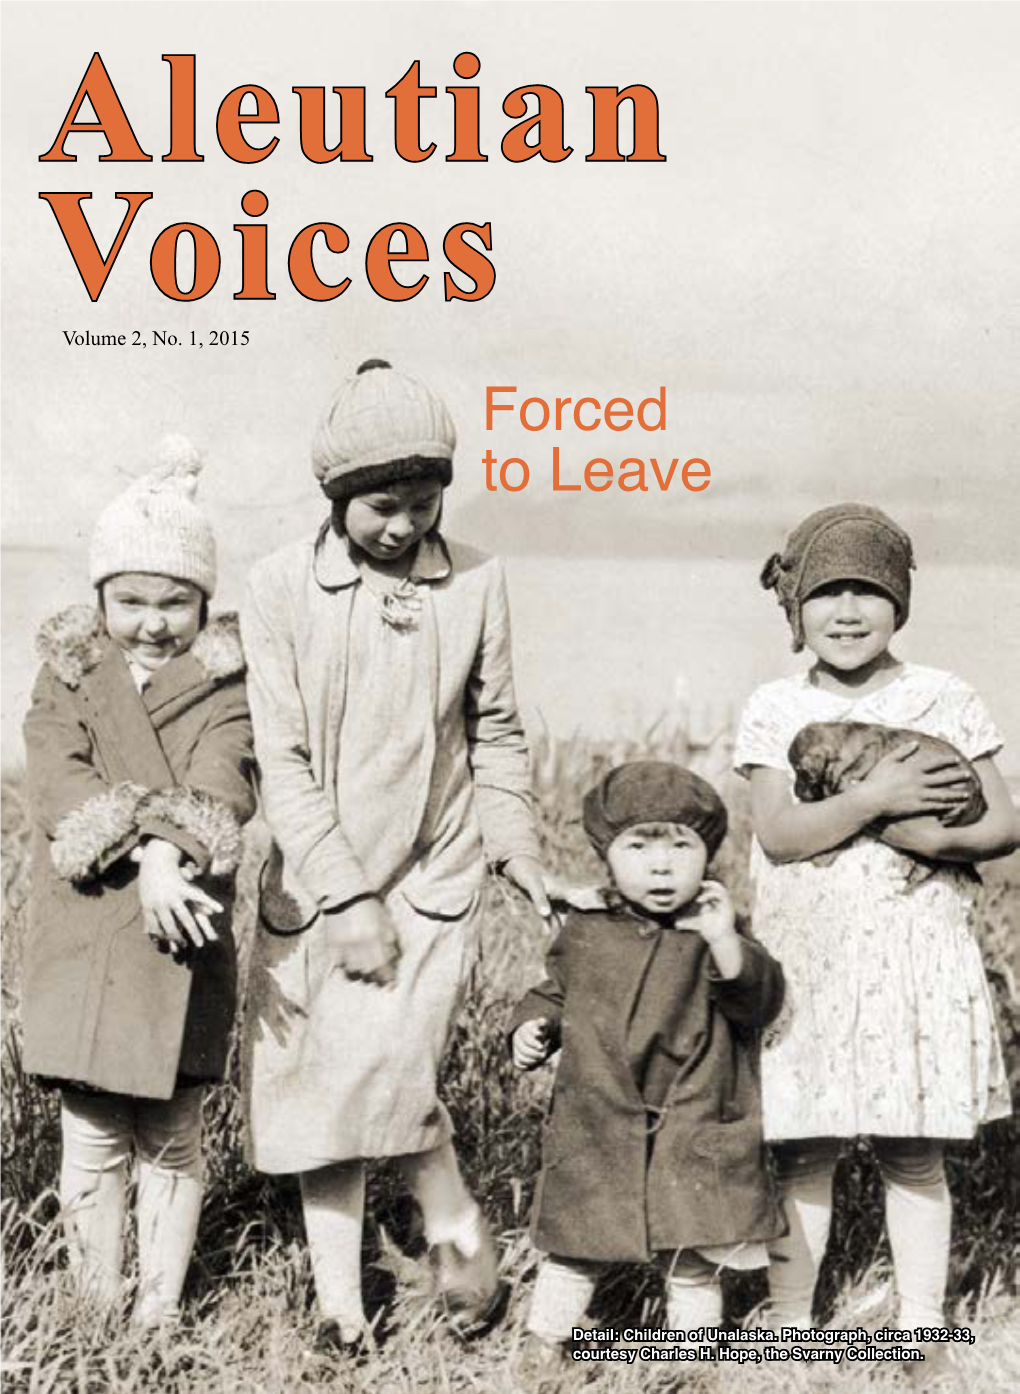 Aleutian Voices Volume 2, No